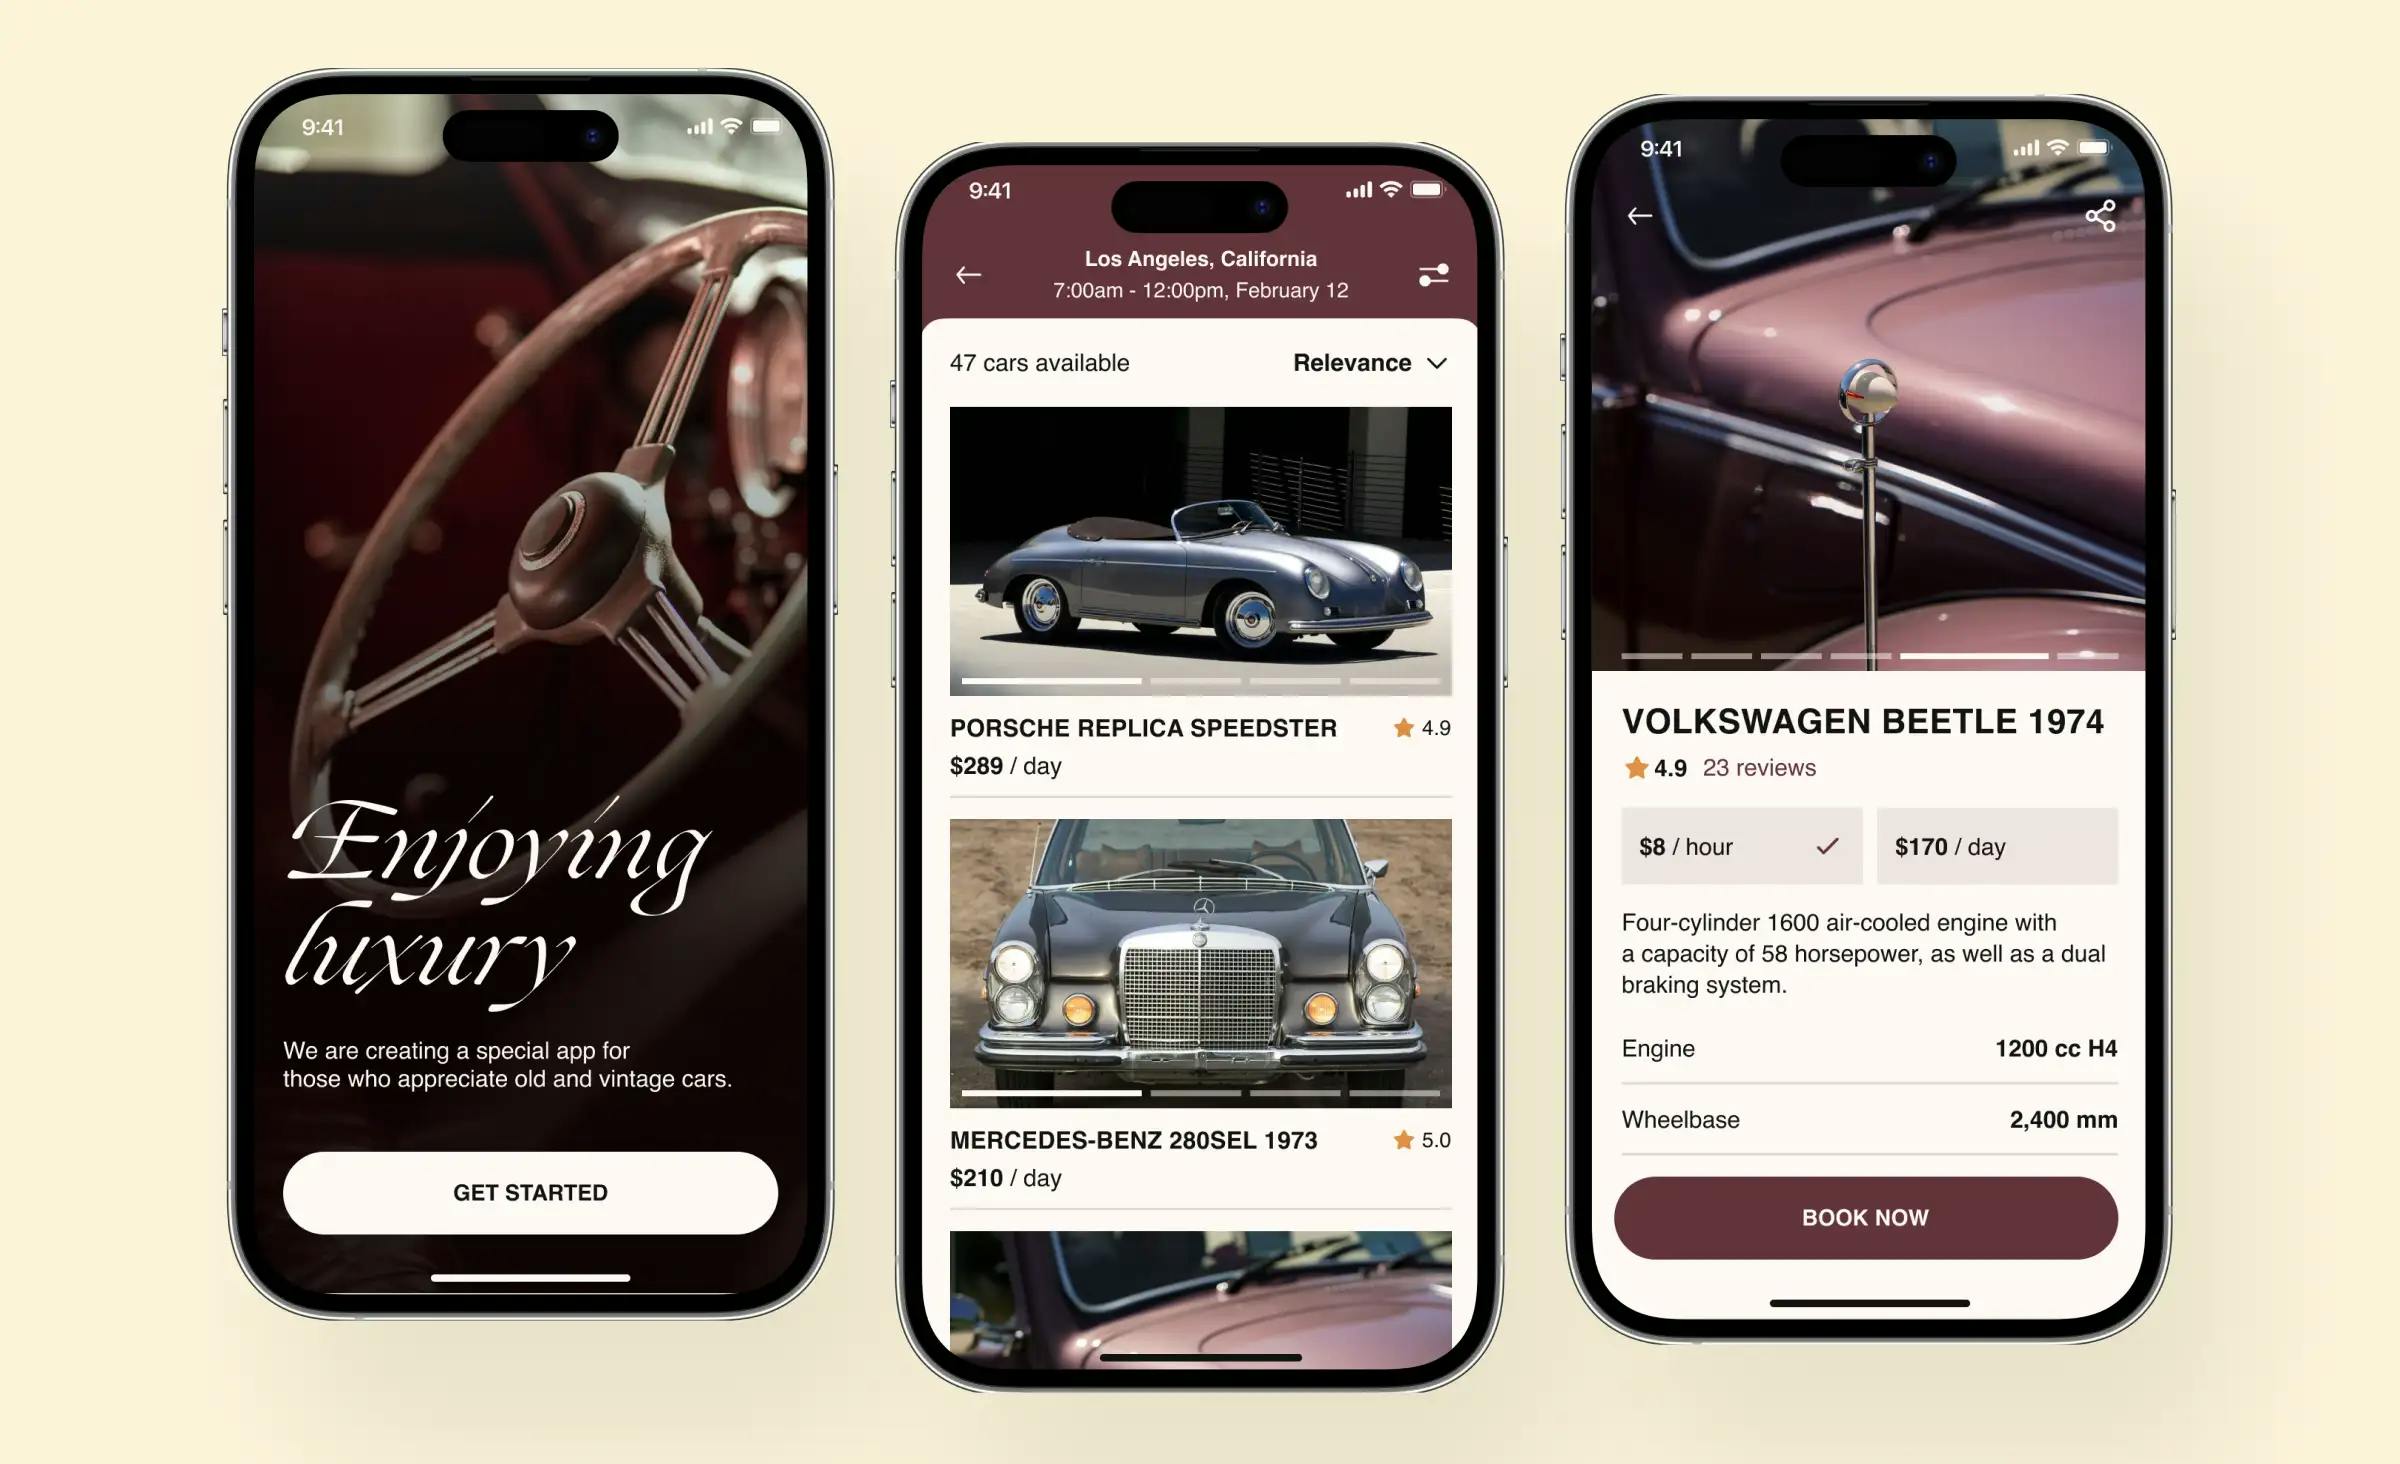 A design concept for automotive app development - a vintage car rental app